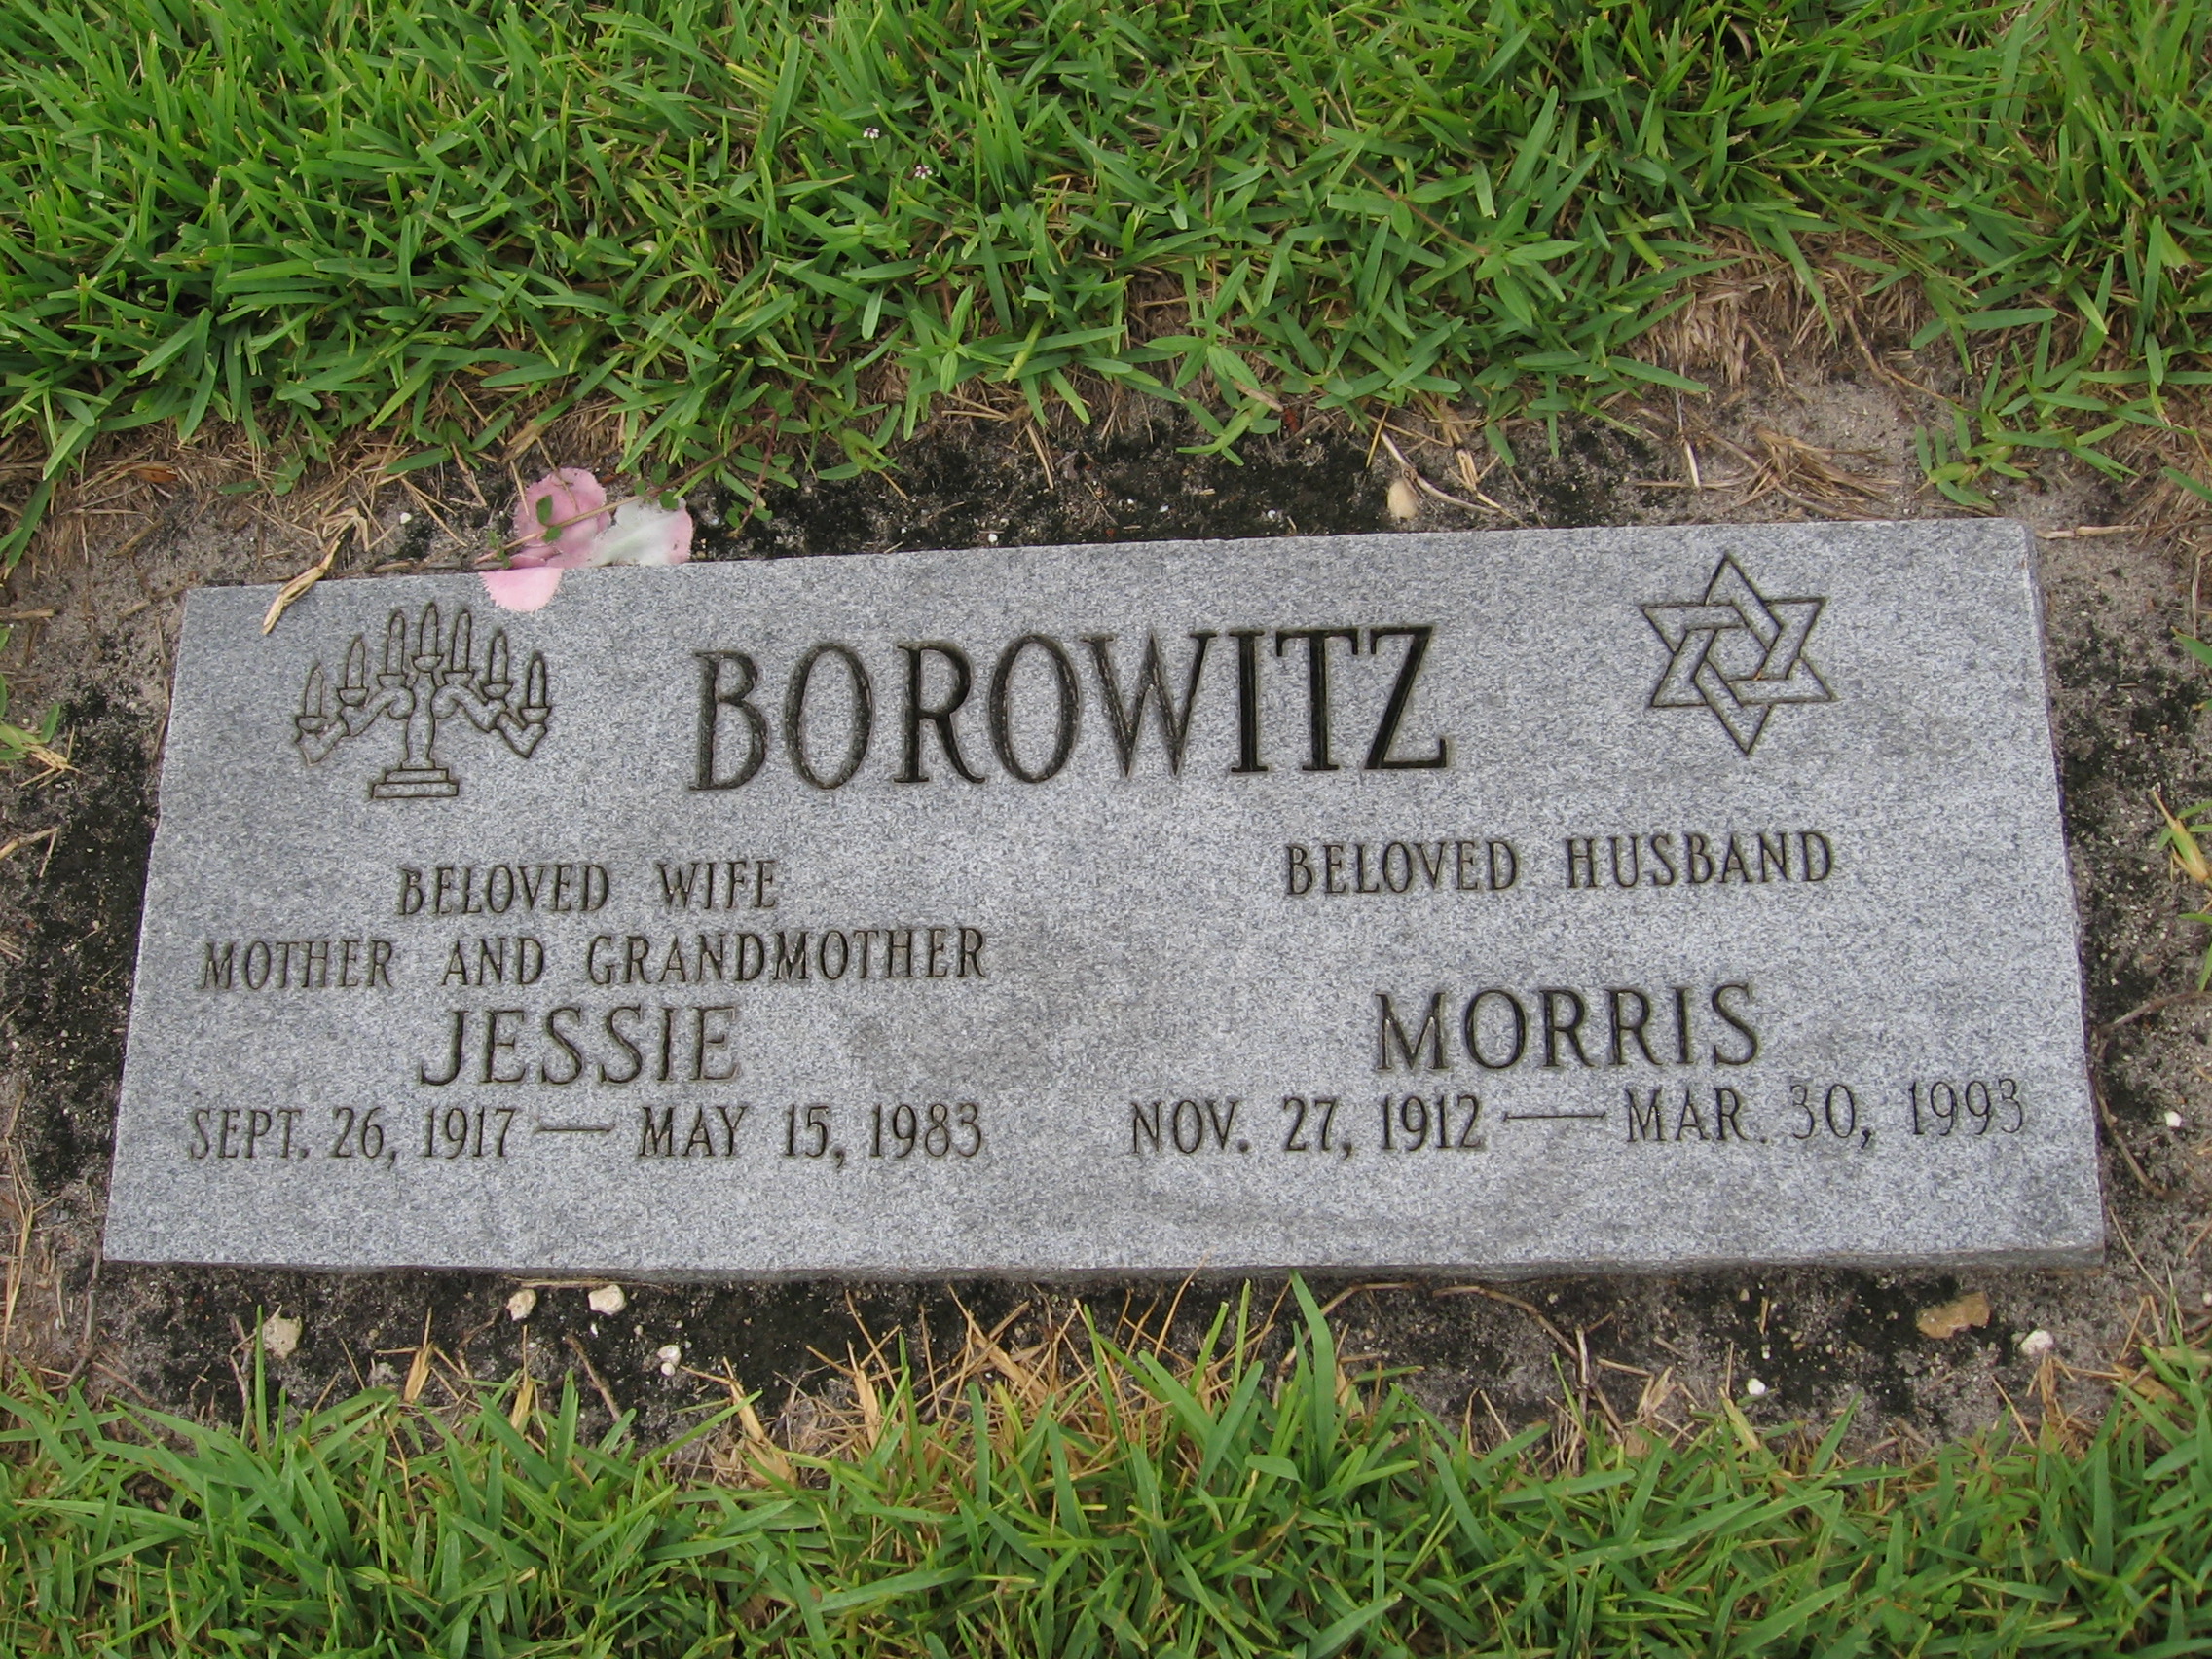 Morris Borowitz